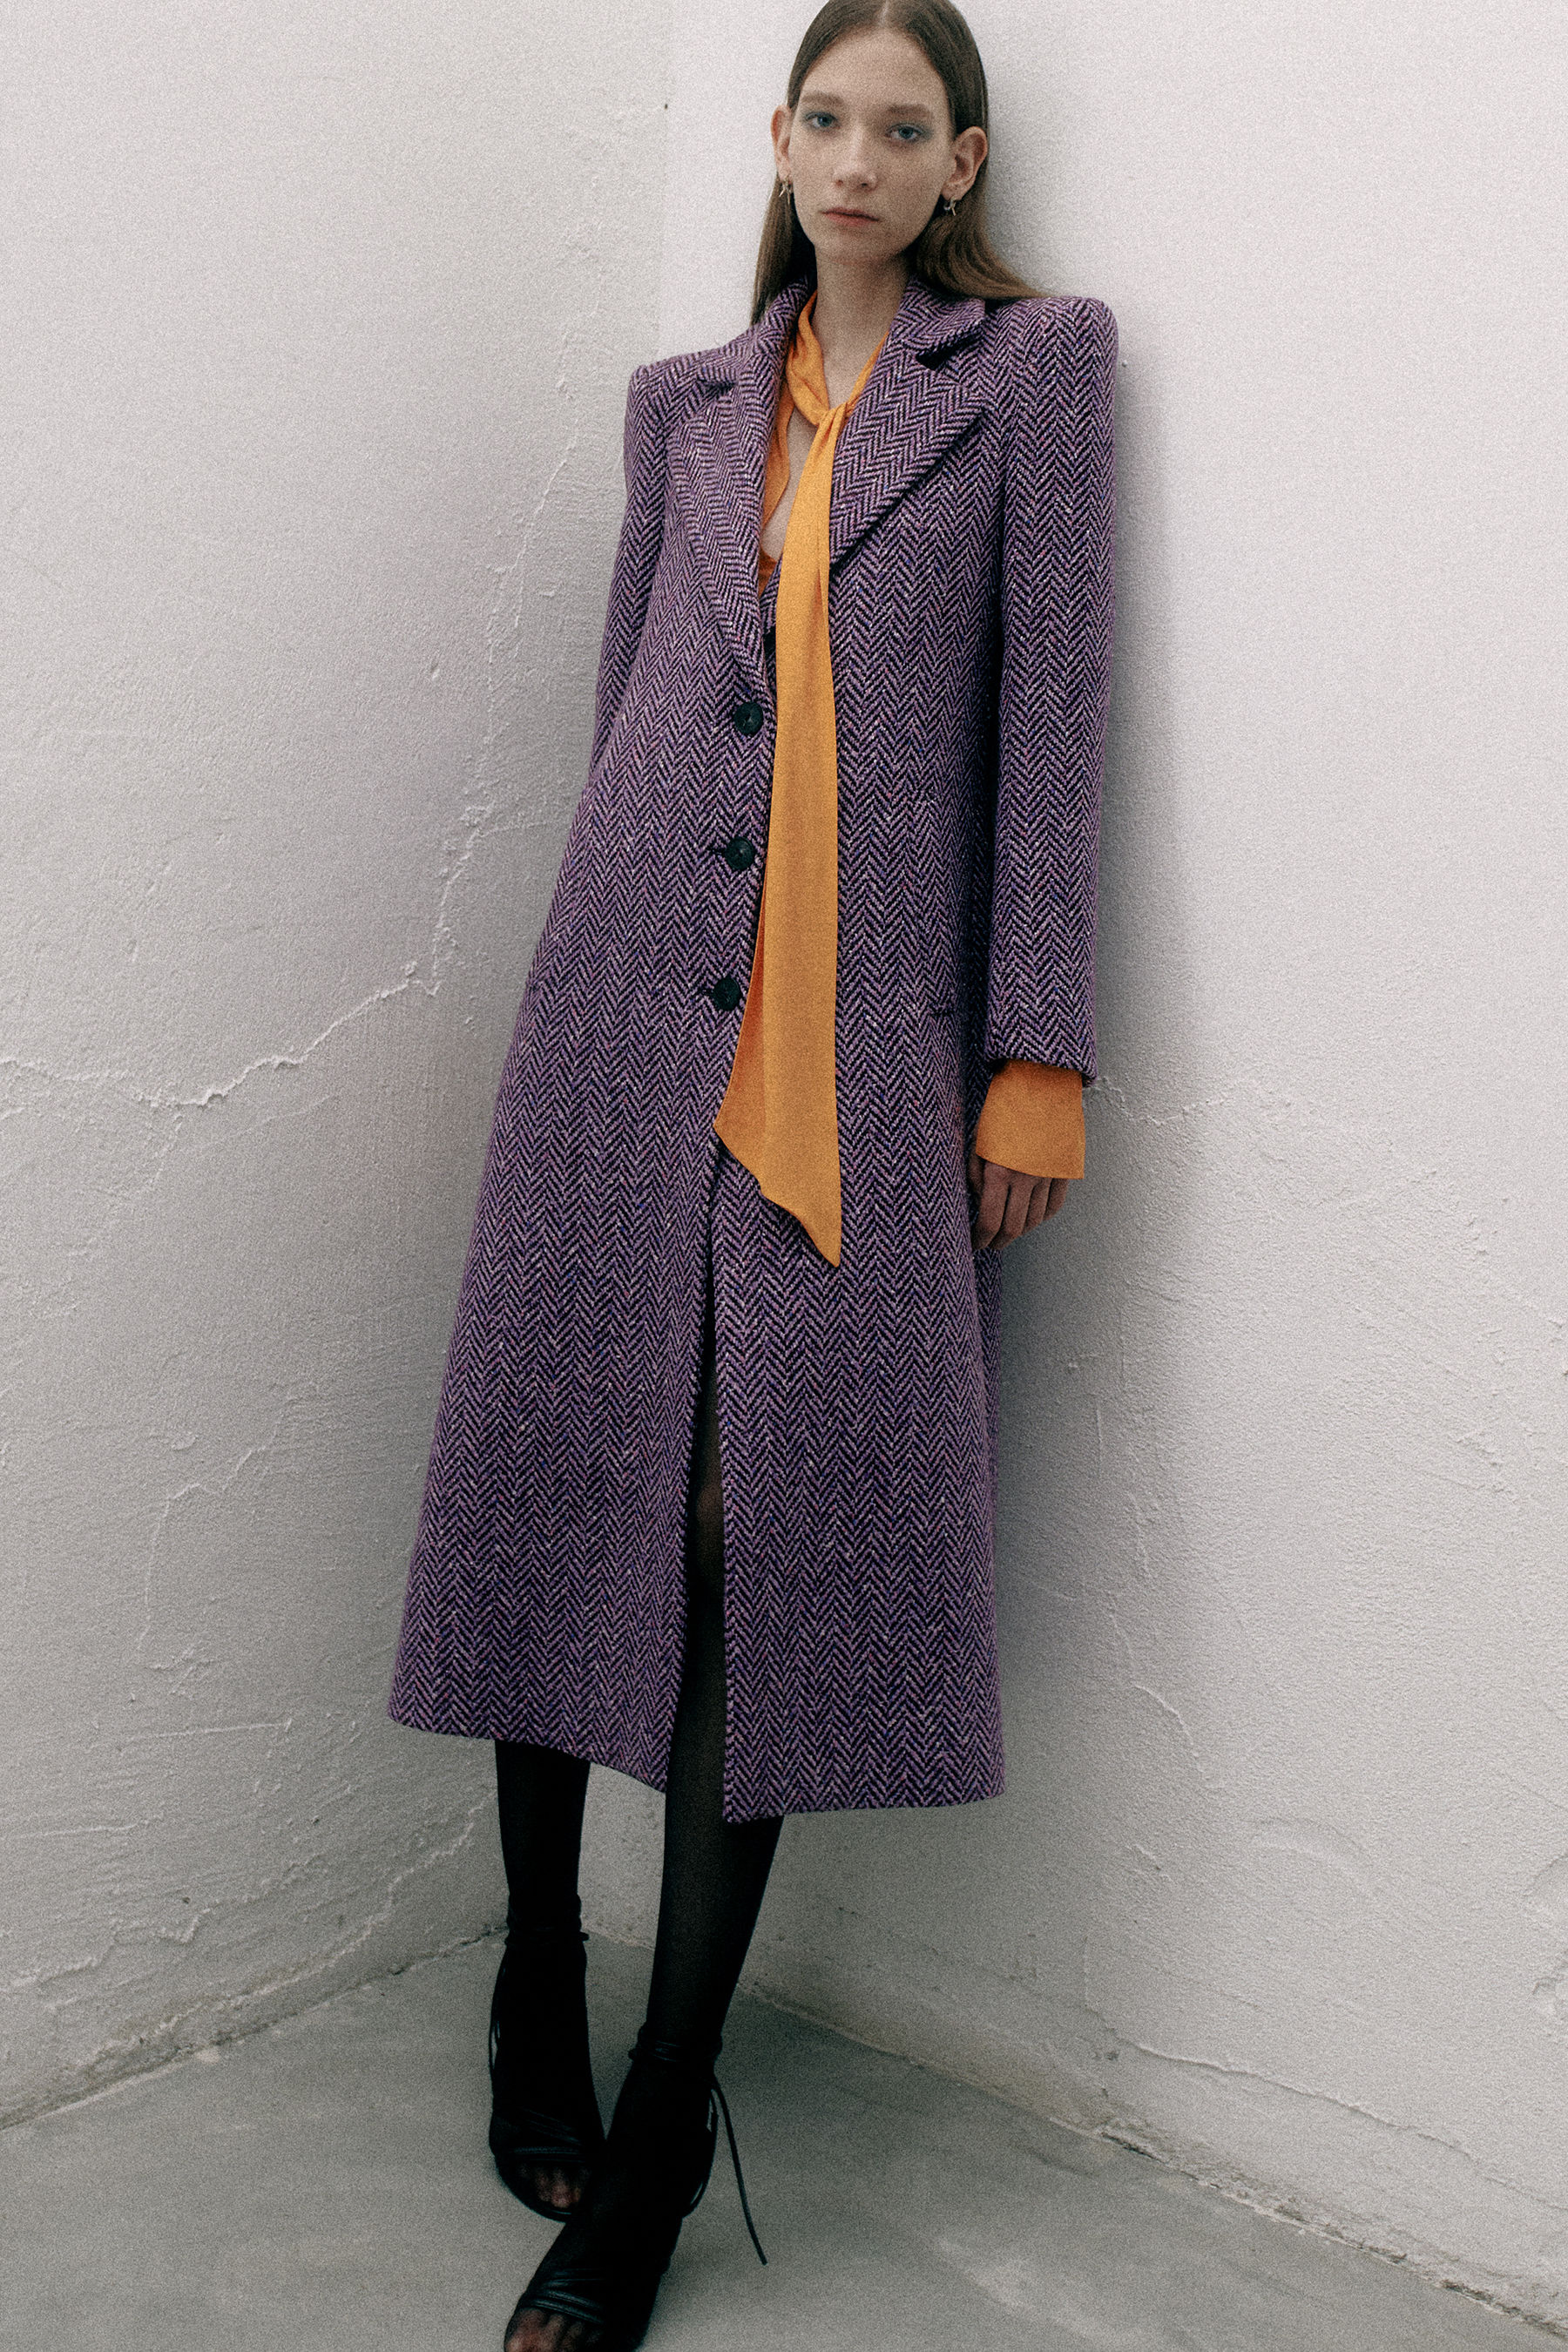 Coats for women: long or short coats | Patrizia Pepe